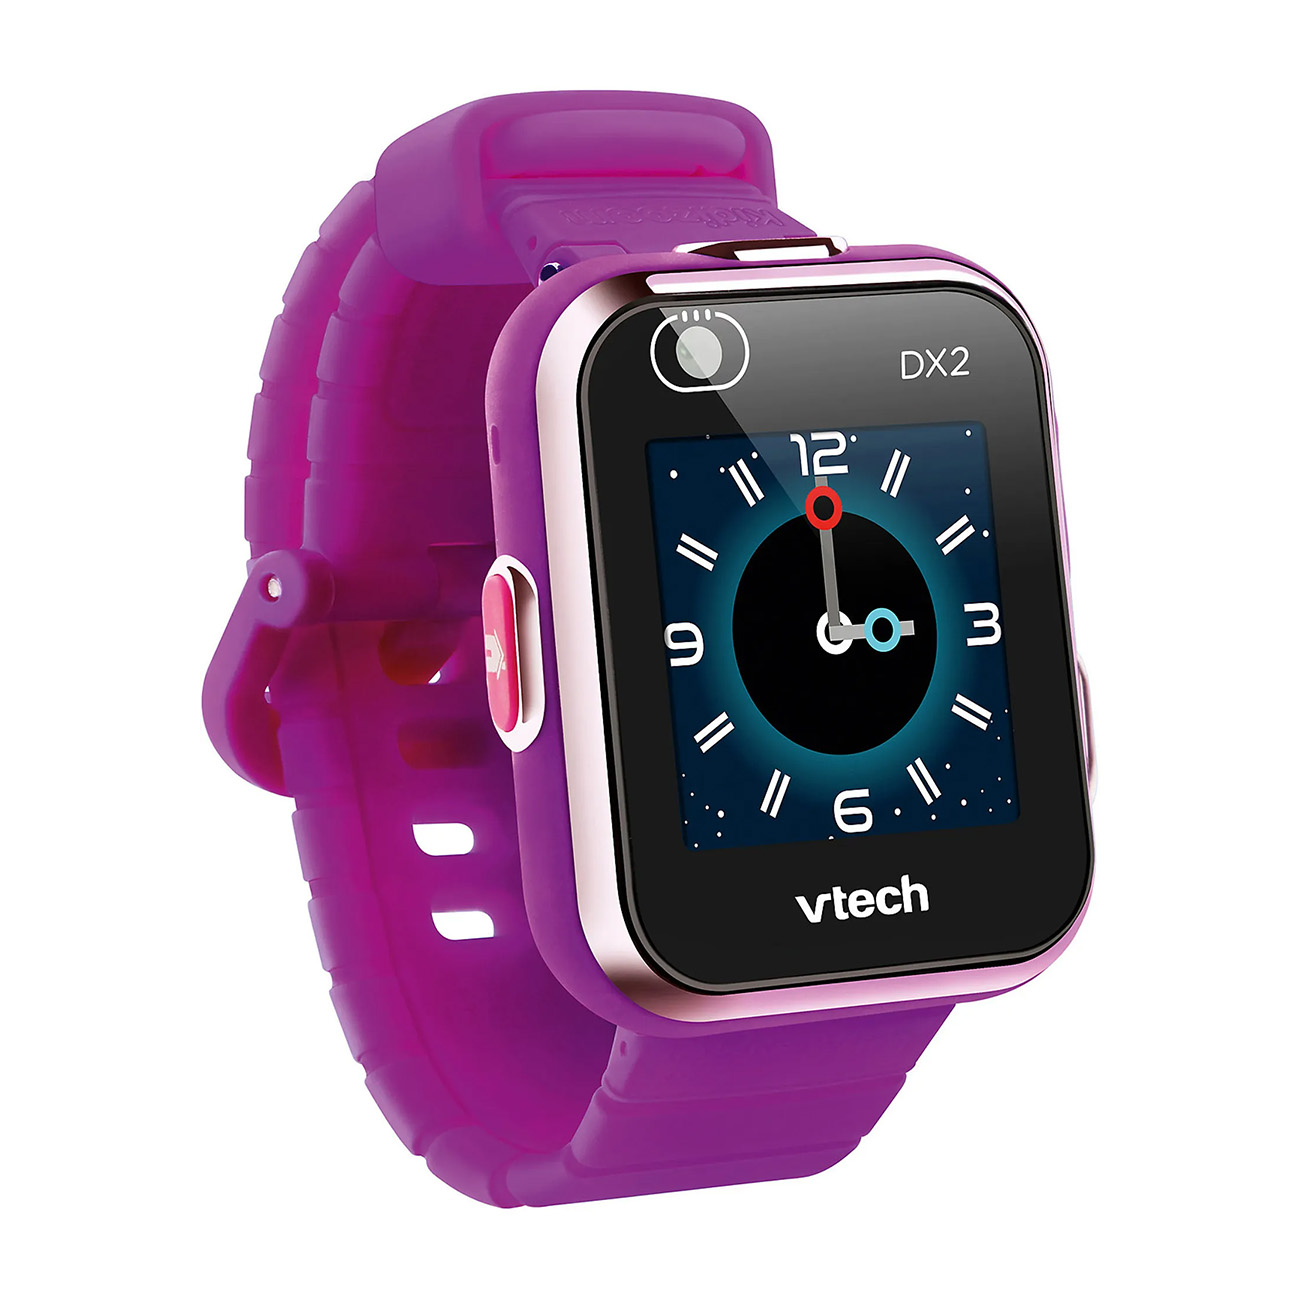 VTECH lila Kidizoom Silikon, DX2 Smartwatch